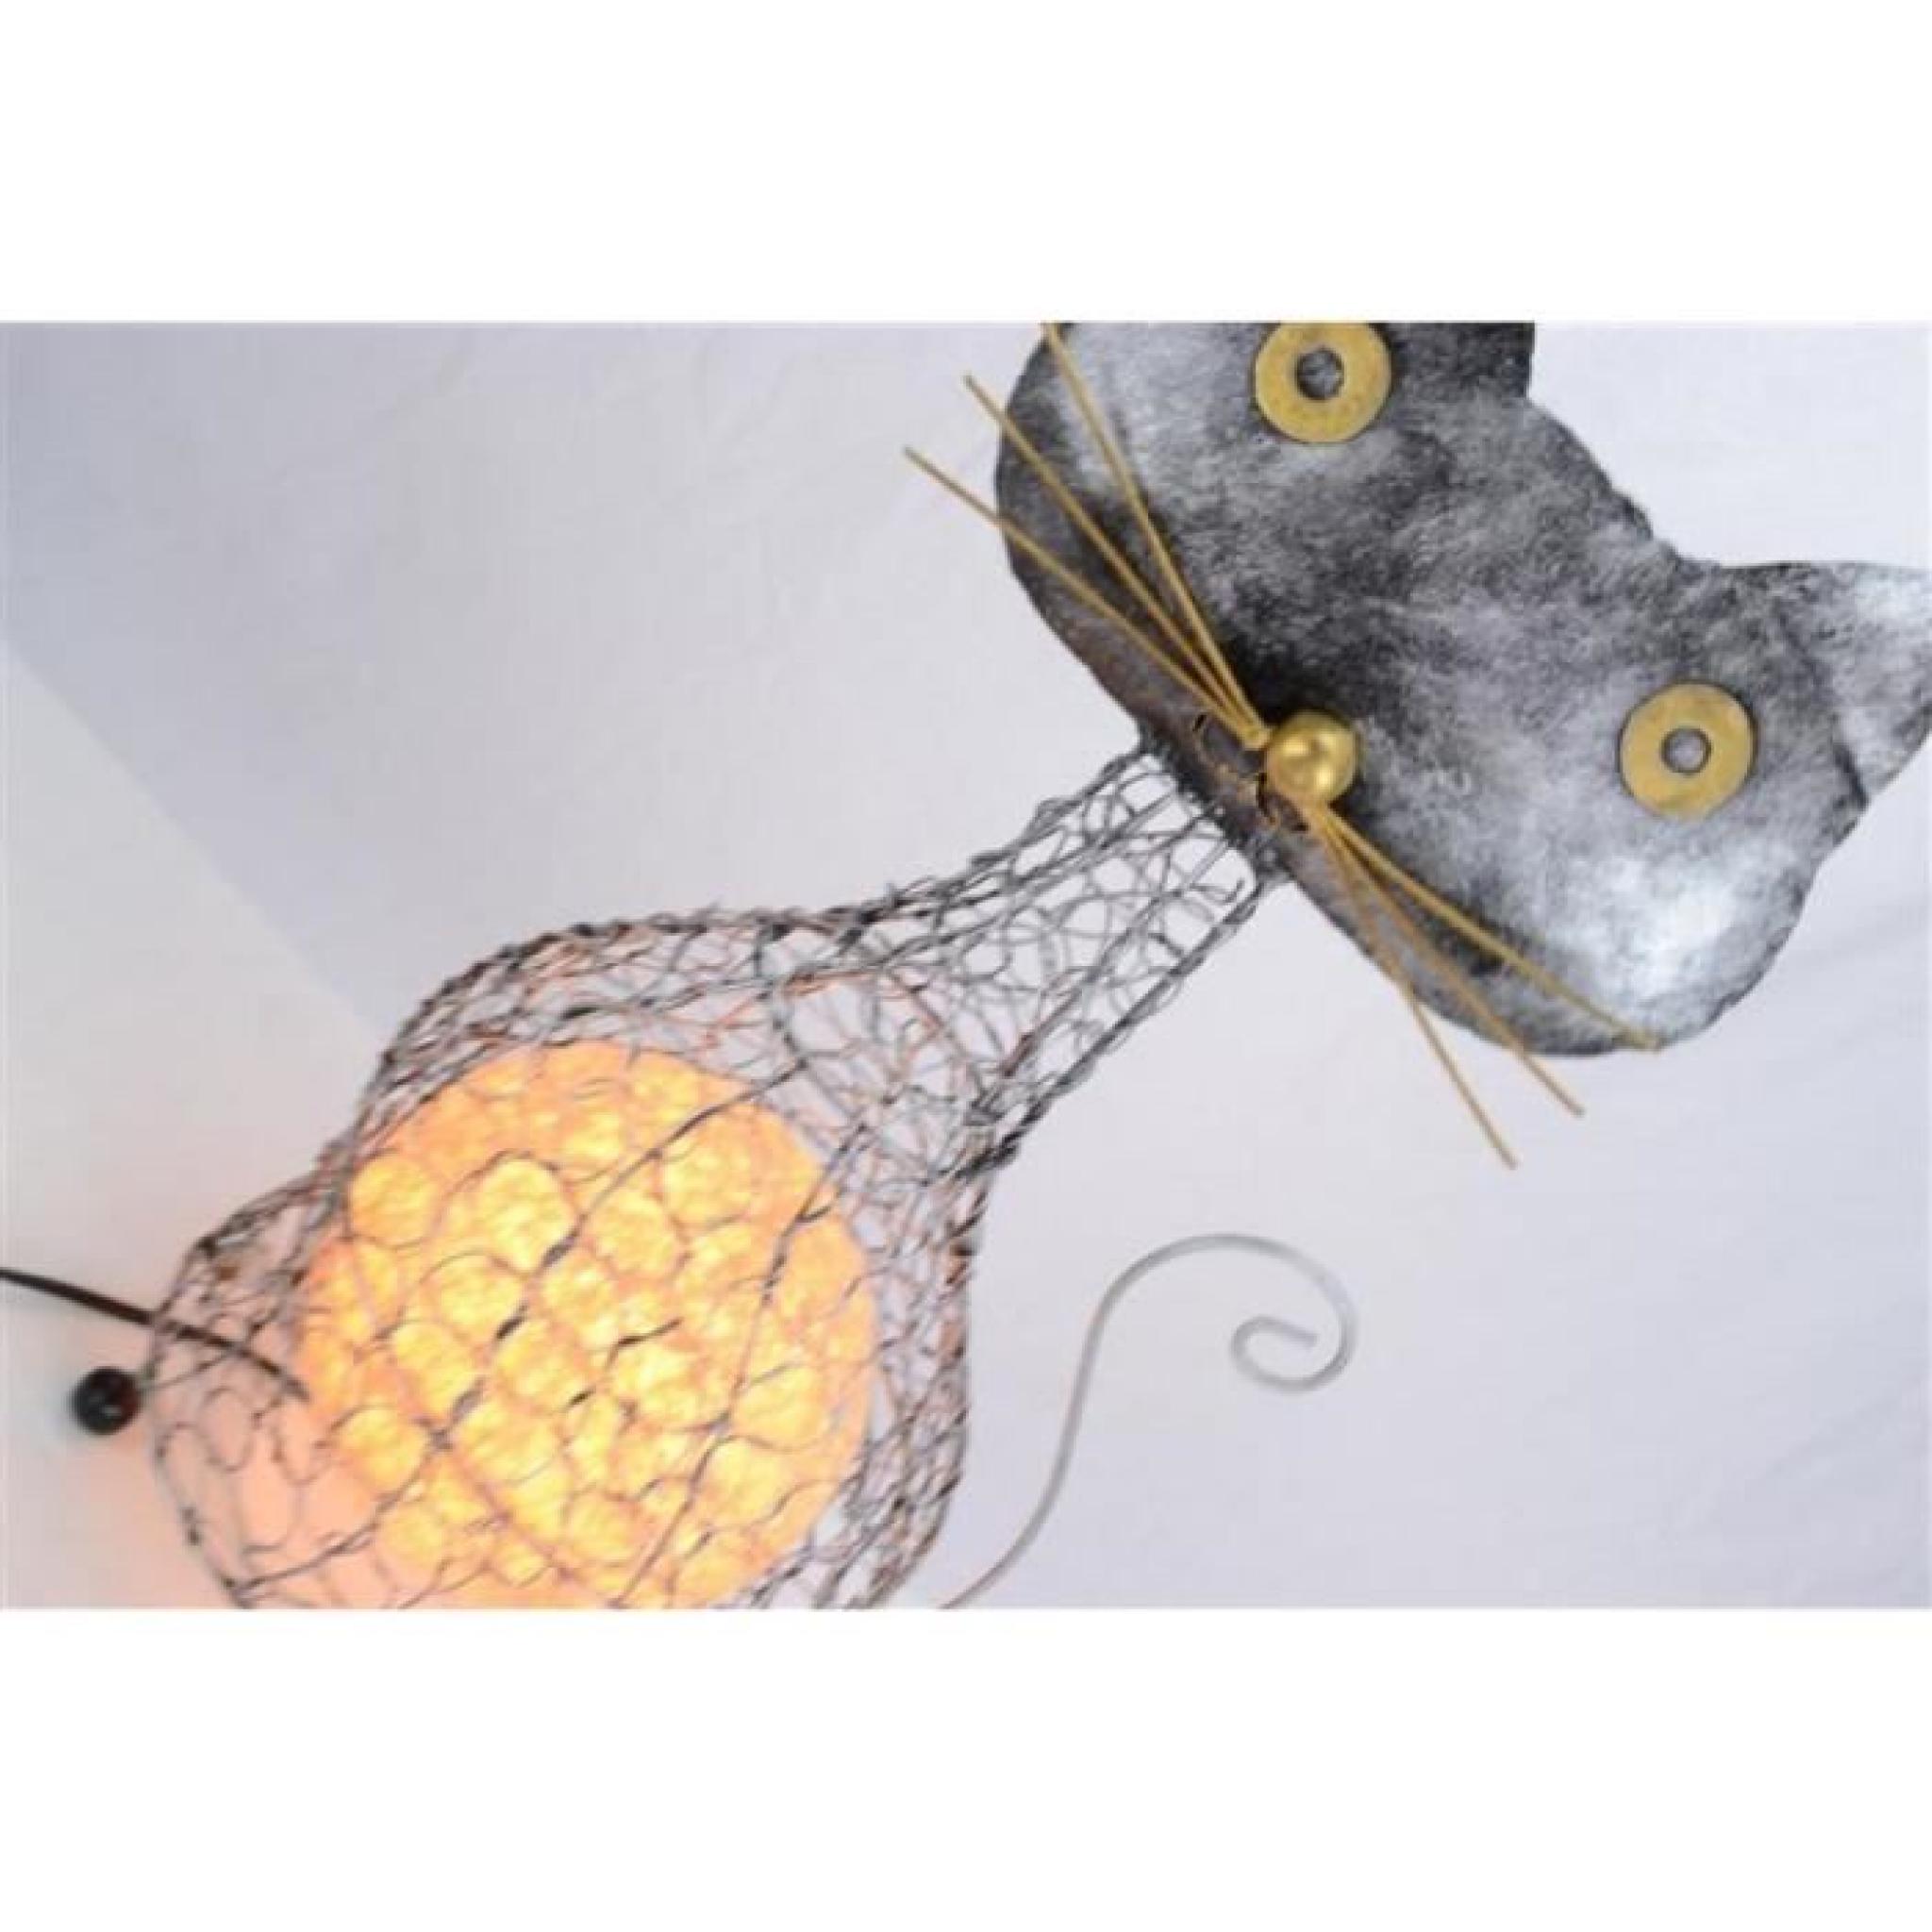 Lampe forme chat en fer forgé. Fabrication arti… pas cher